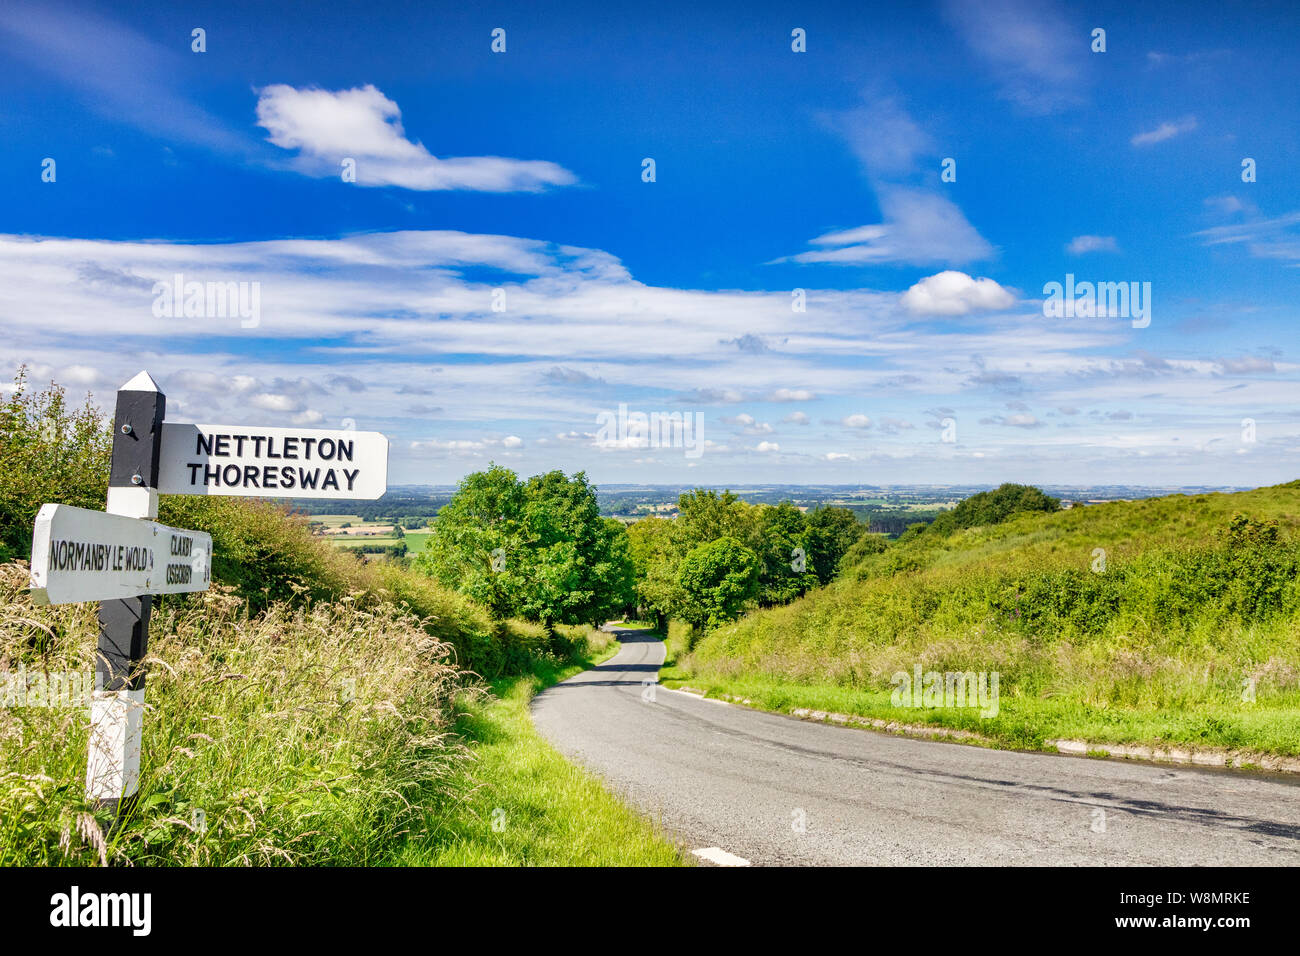 Une route de campagne qui traverse le Lincolnshire Wolds, une région d'une beauté naturelle, et un panneau à Nettleton. Thoresway Banque D'Images